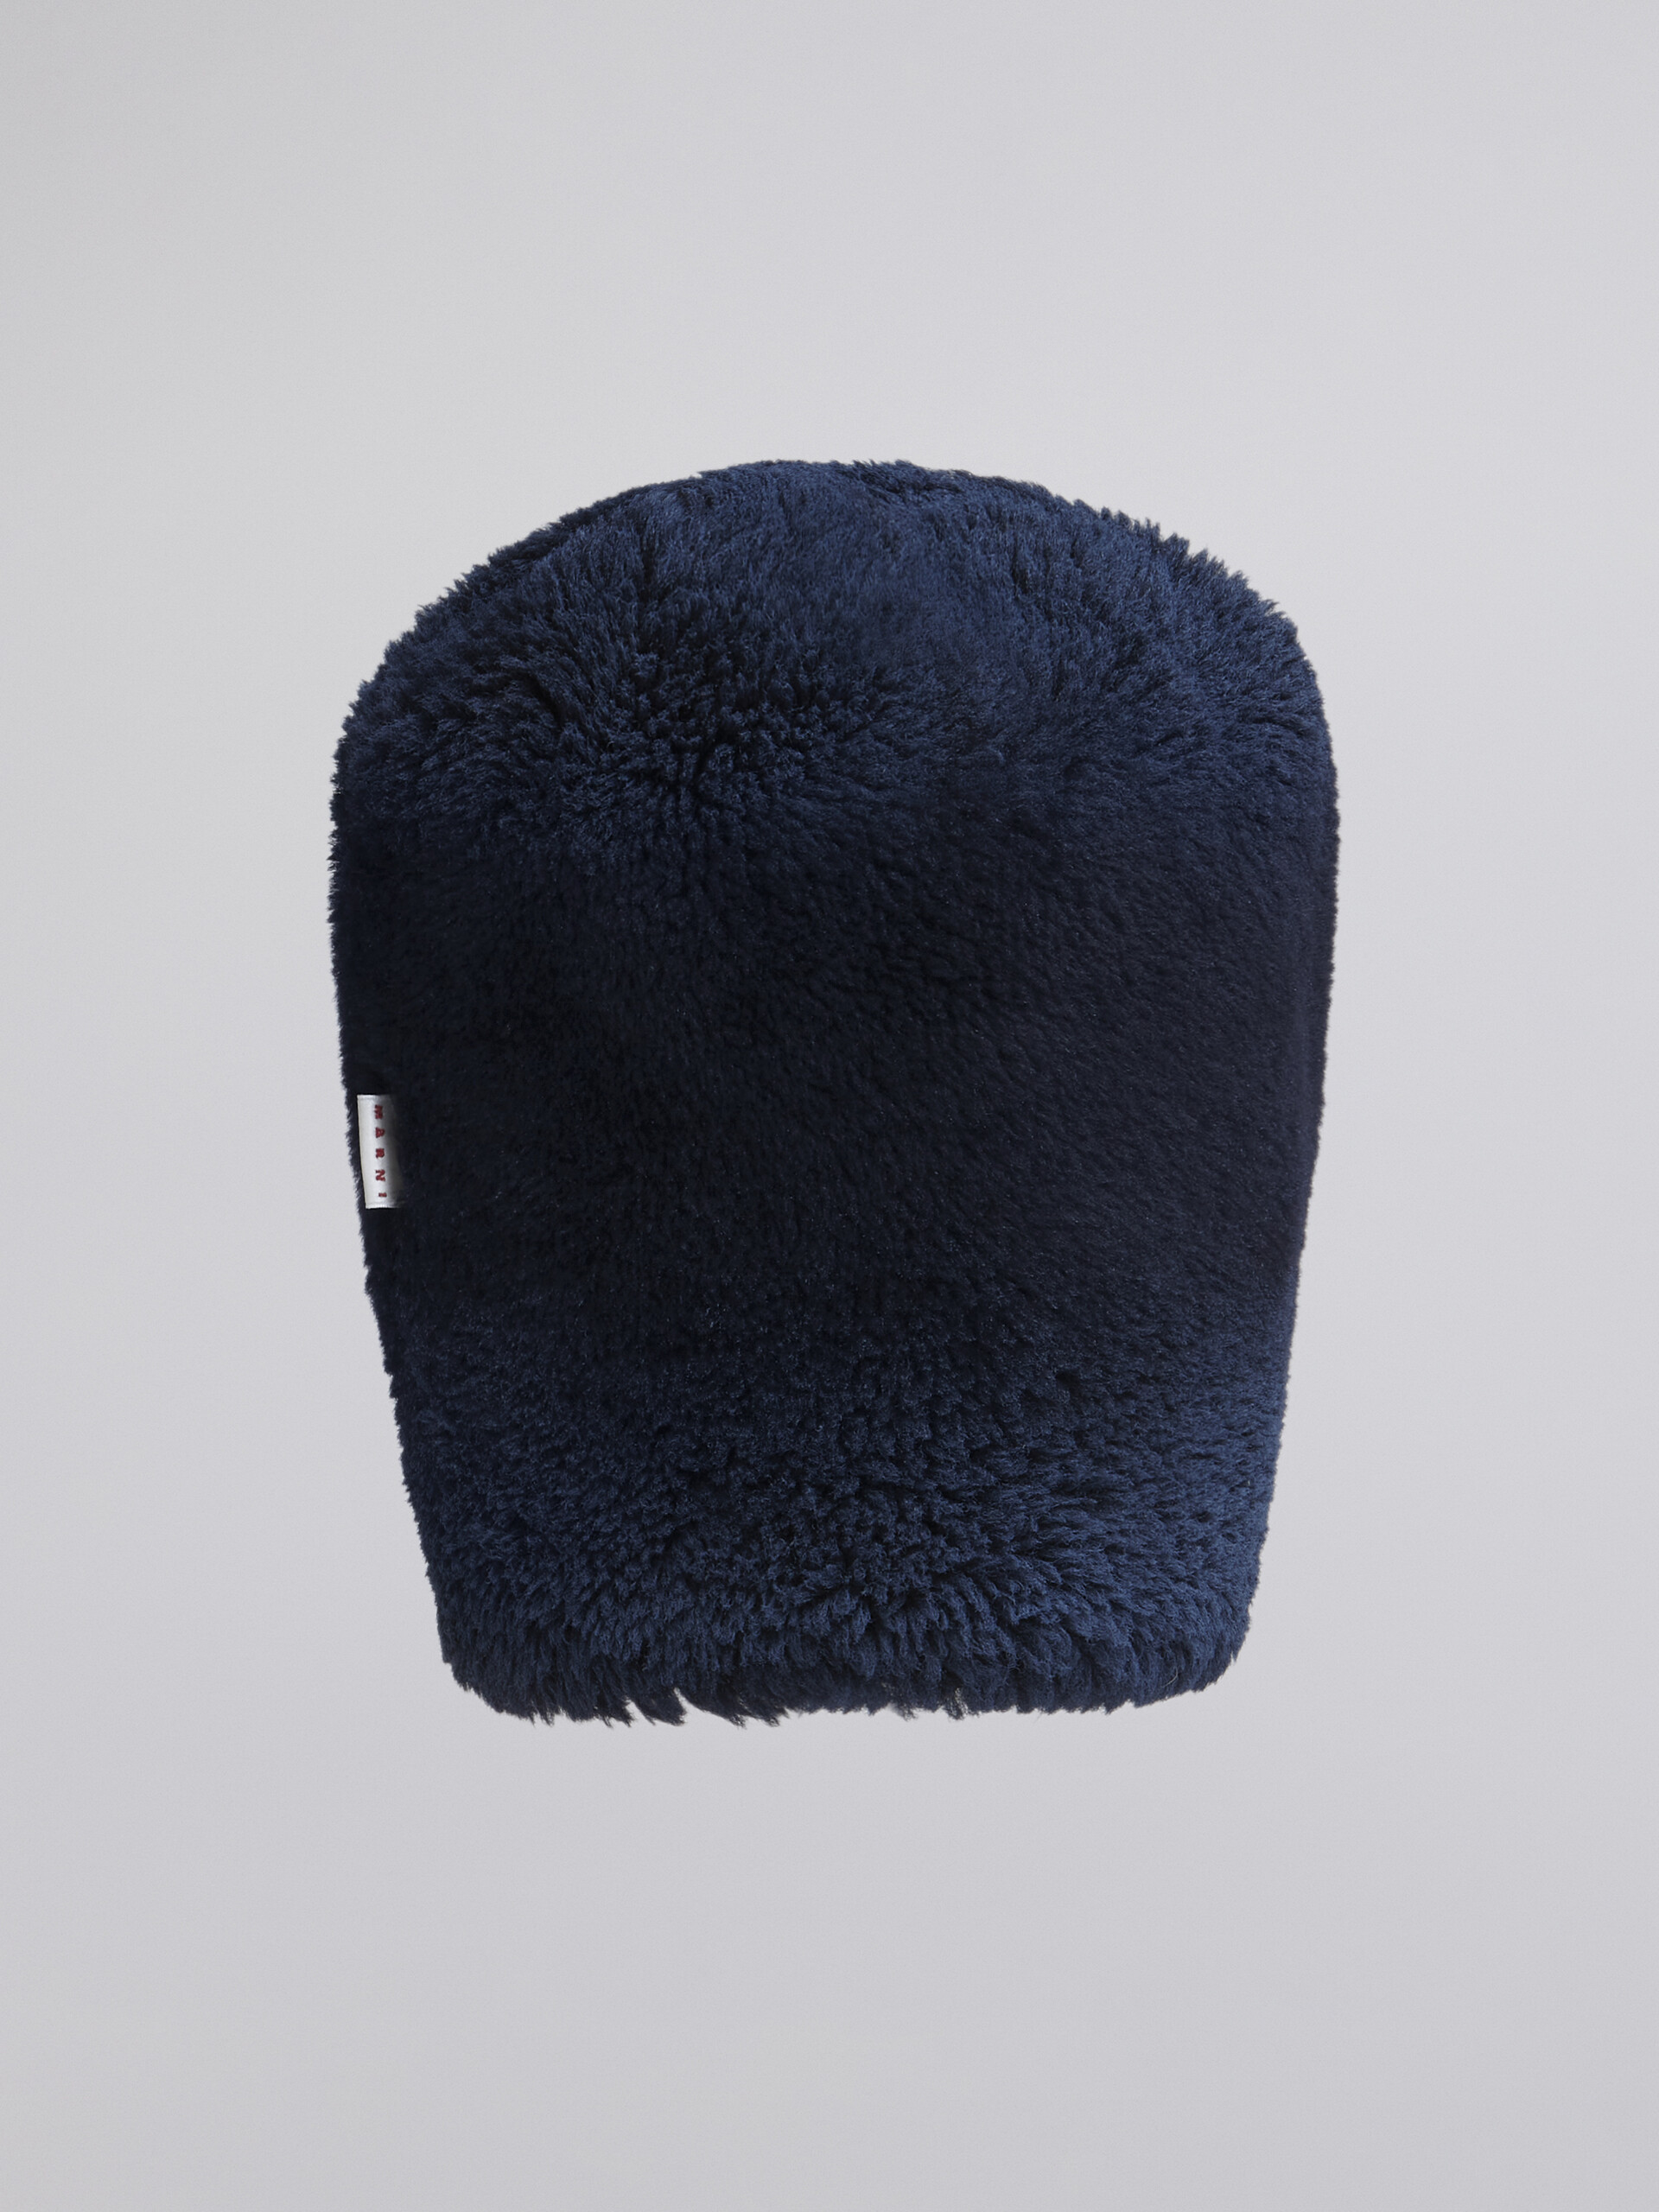 Mütze aus Shearling mit gespritzten, farblich abgestimmten Streifen - Hüte - Image 2